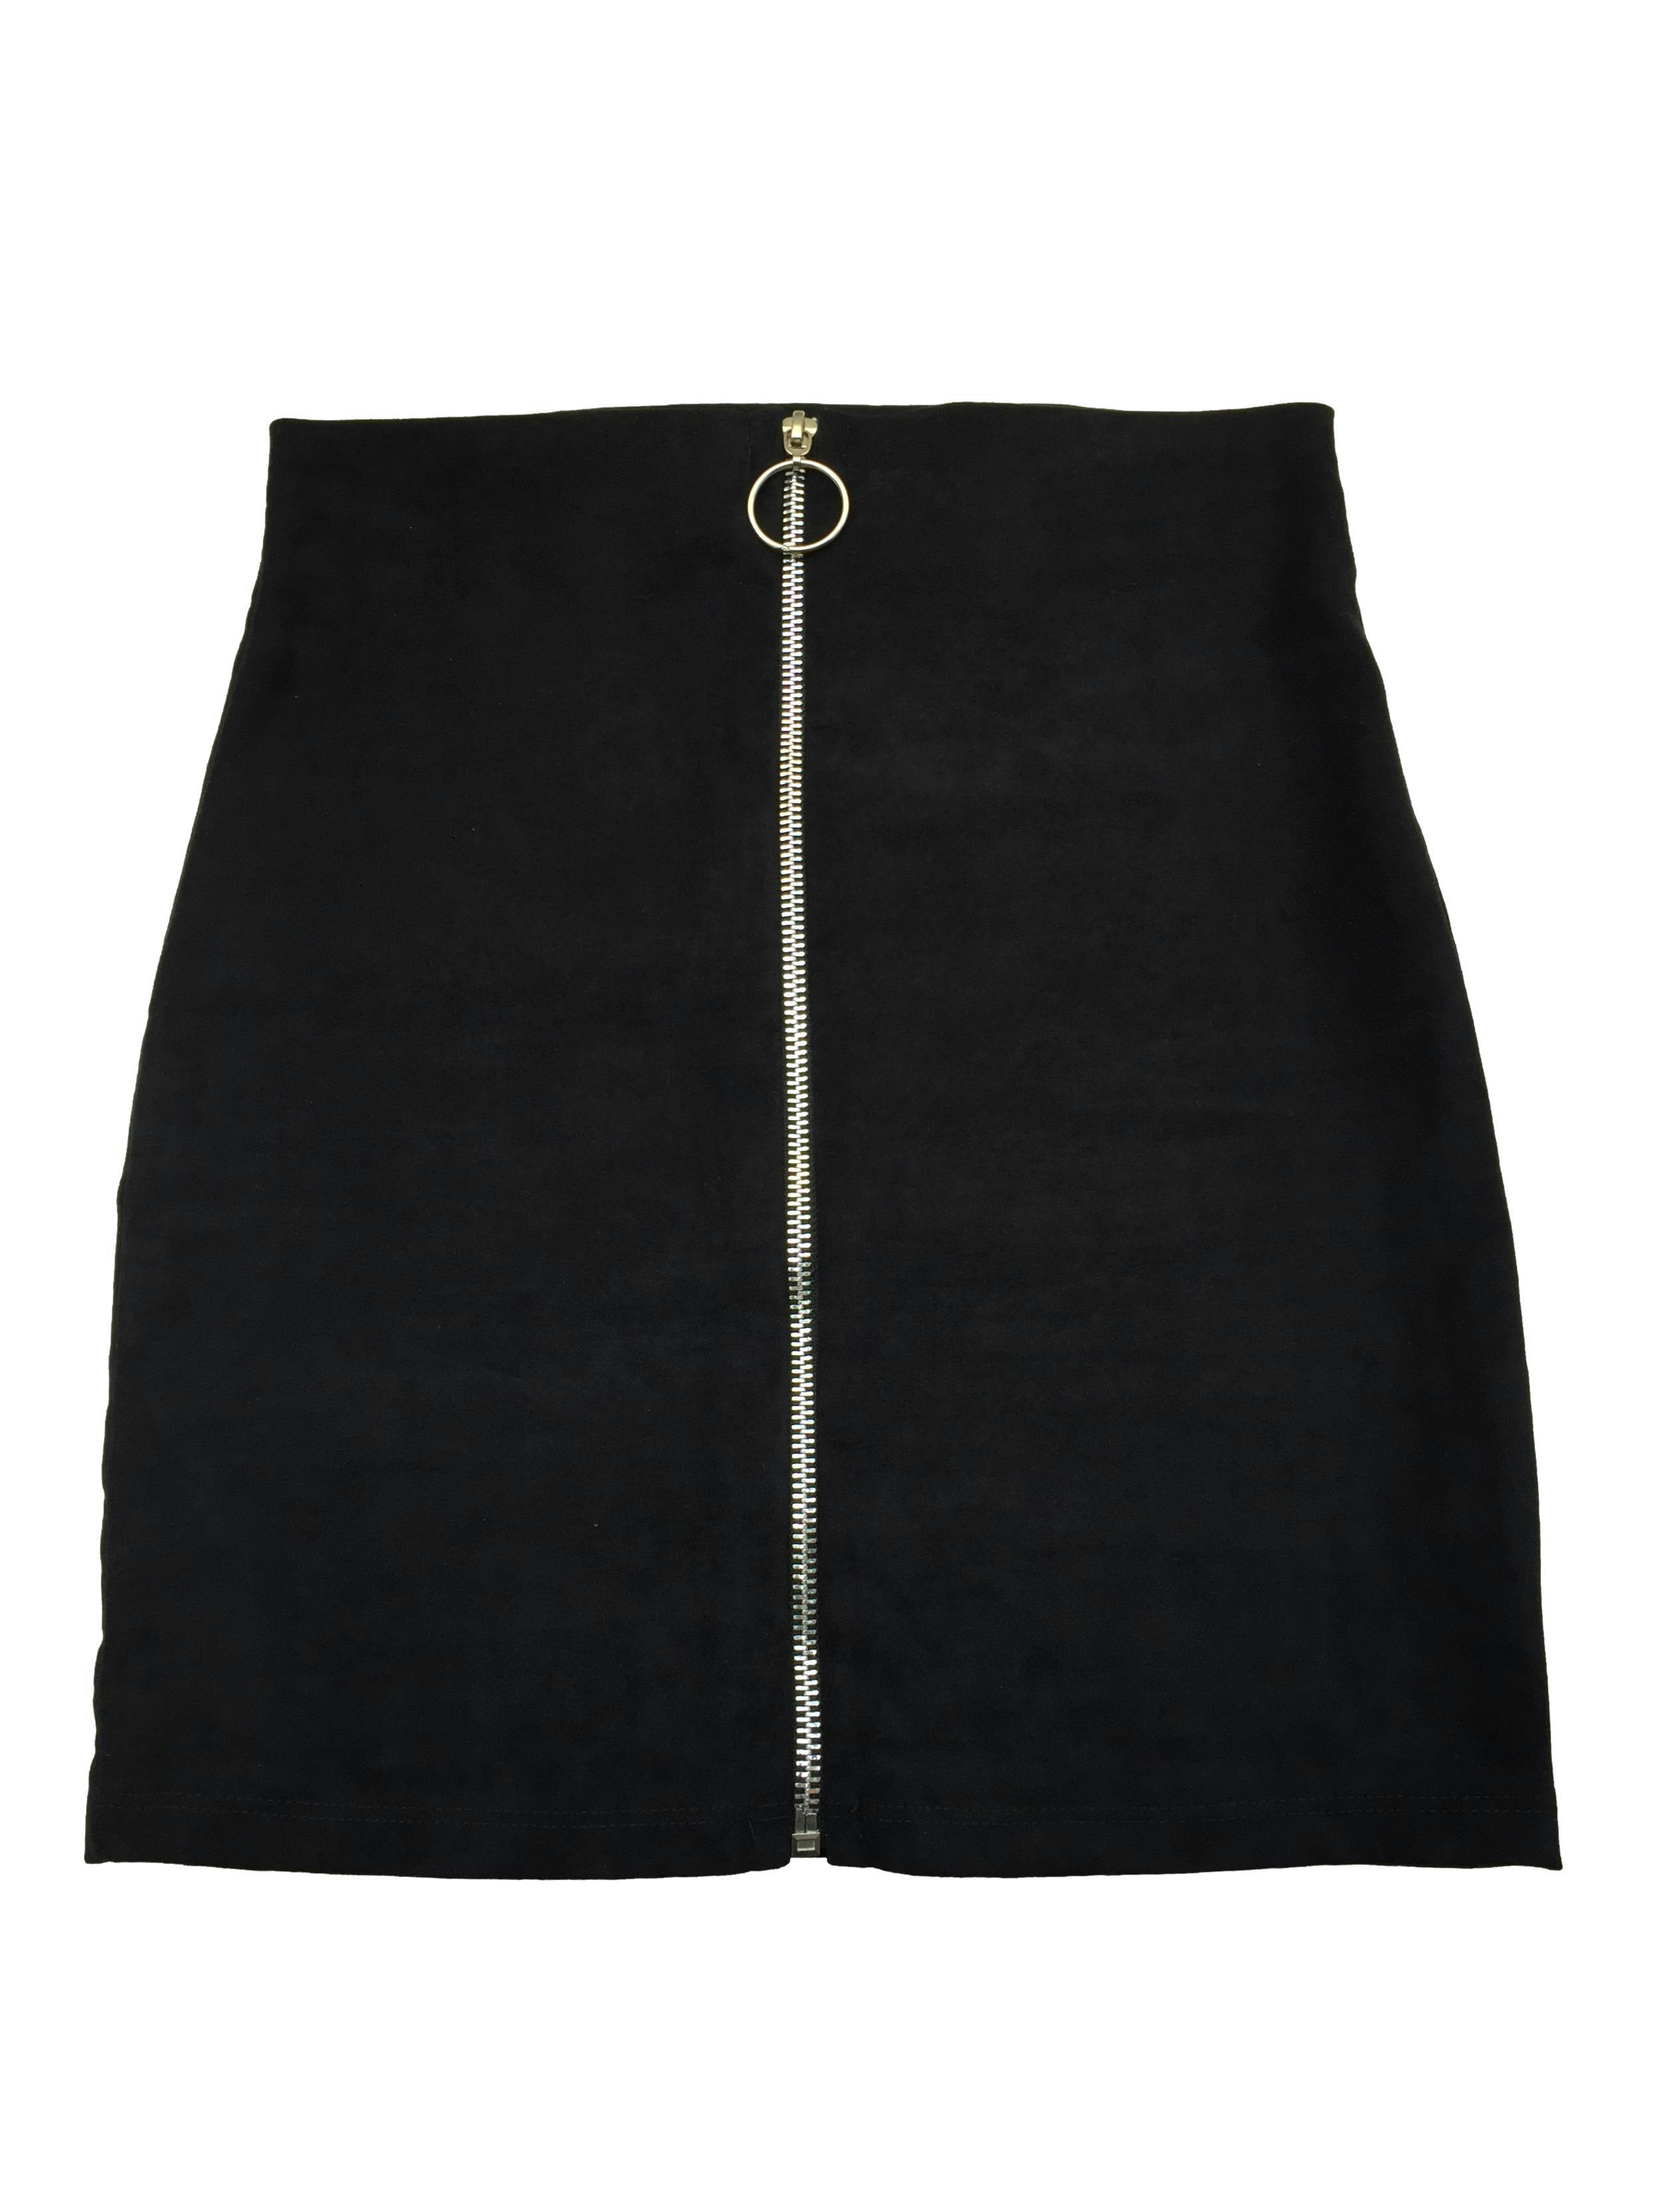 Falda negra de suede con cierre frontal metálico. Cintura 68cm, Largo 40cm.